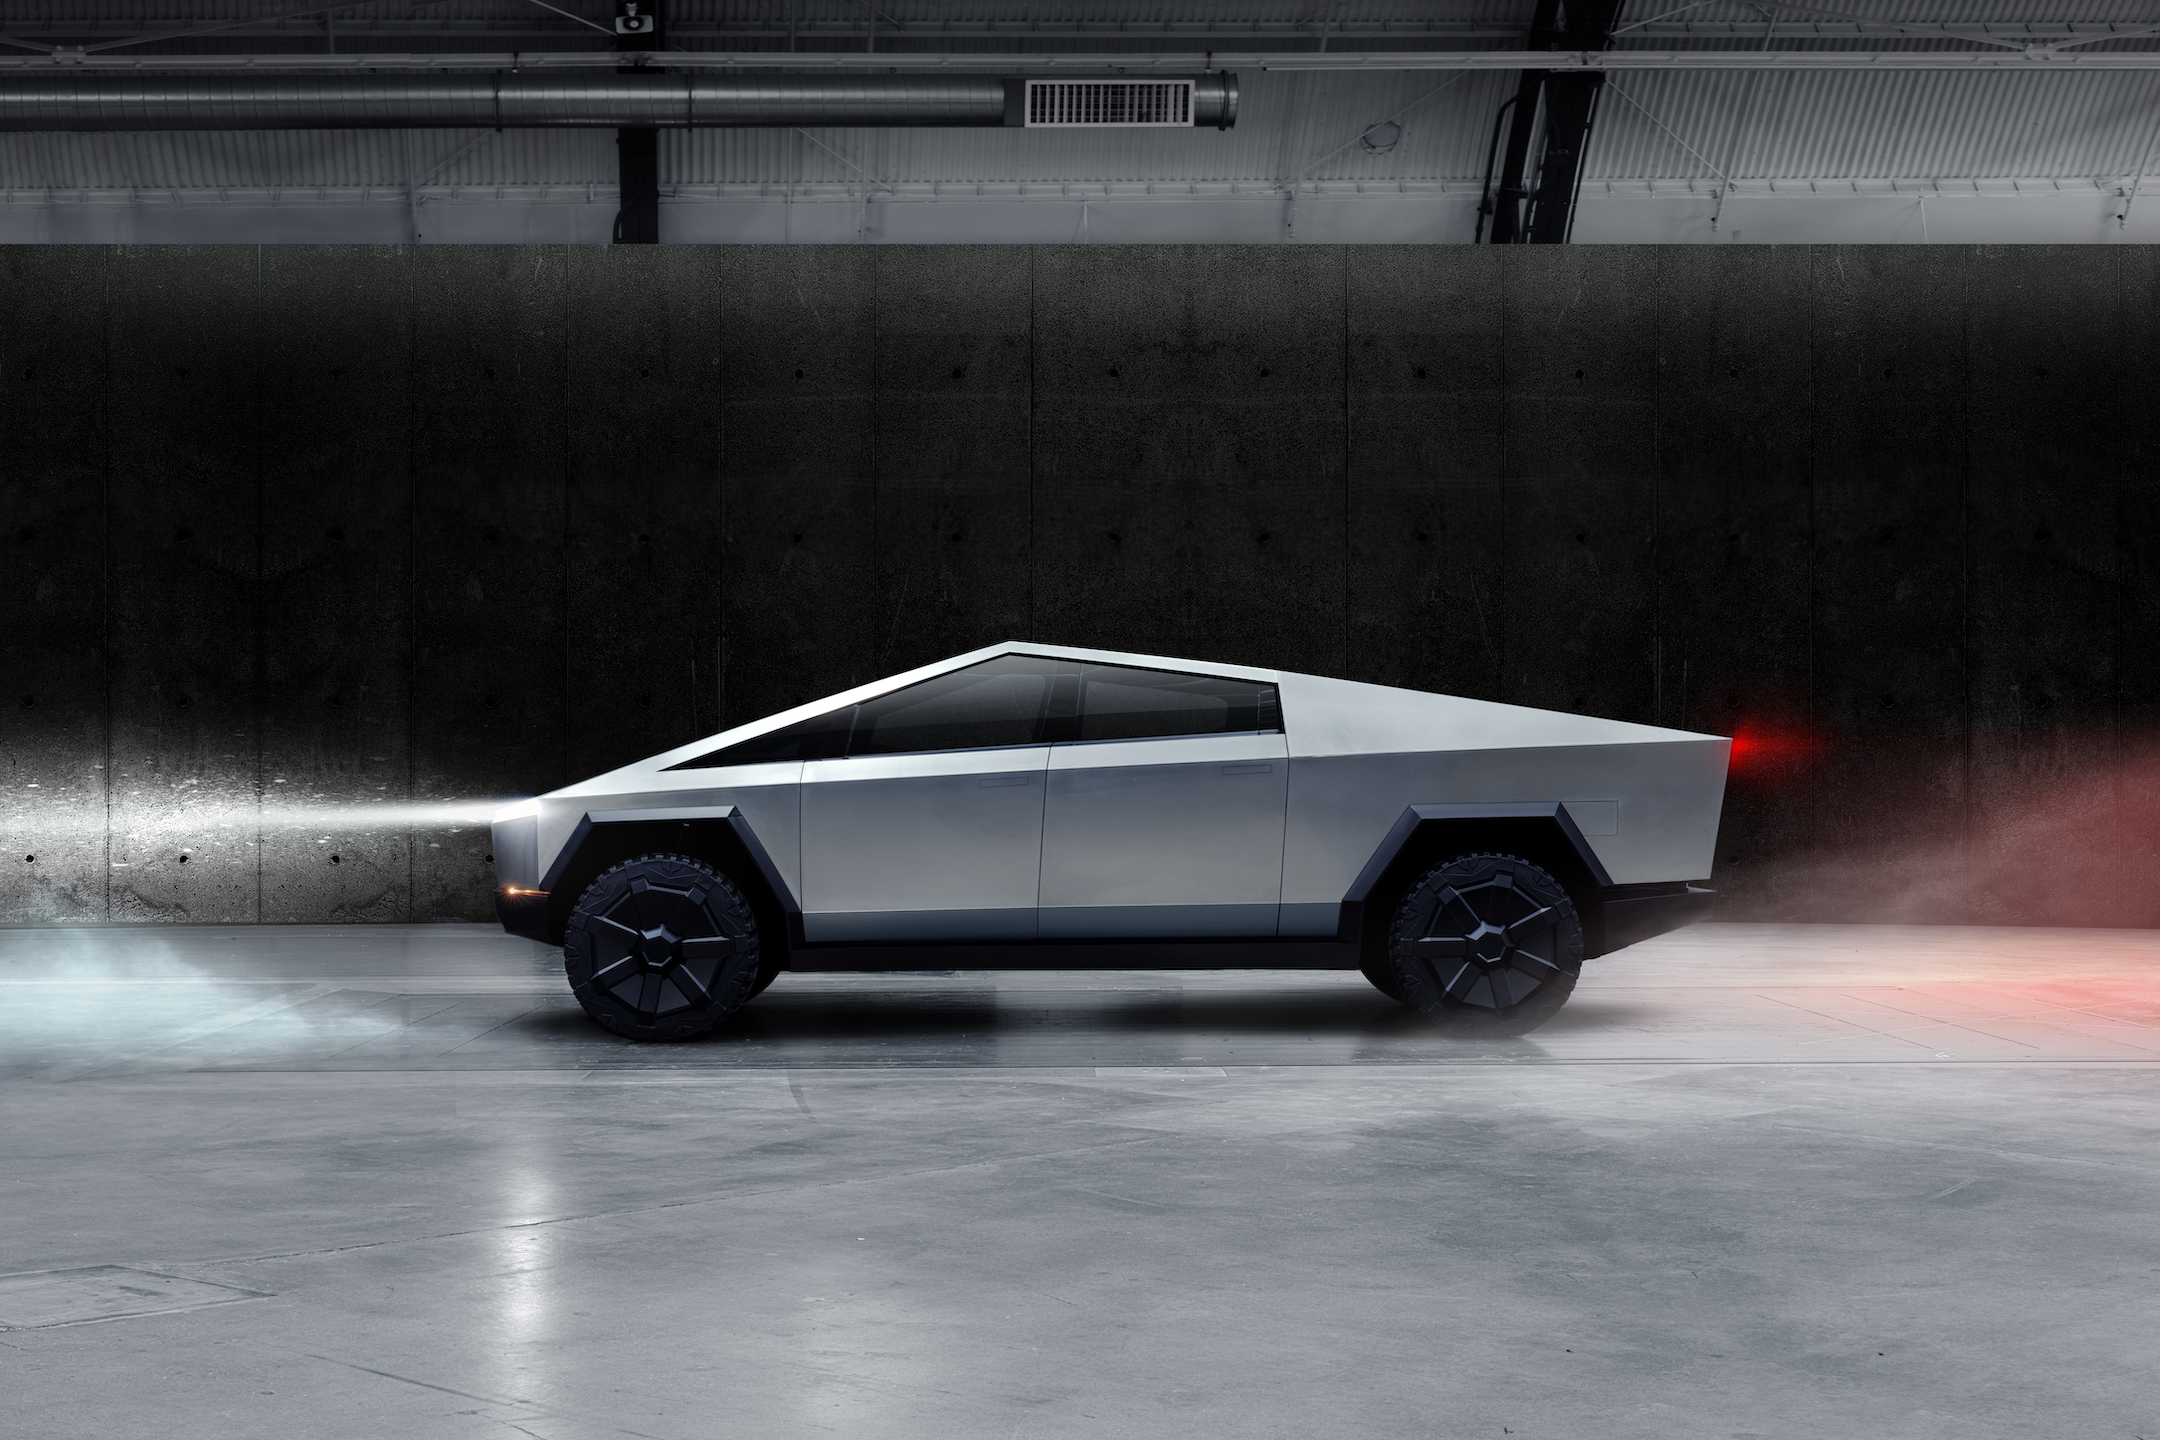 The era of Blade Runner is here, introducing Tesla's Cybertruck